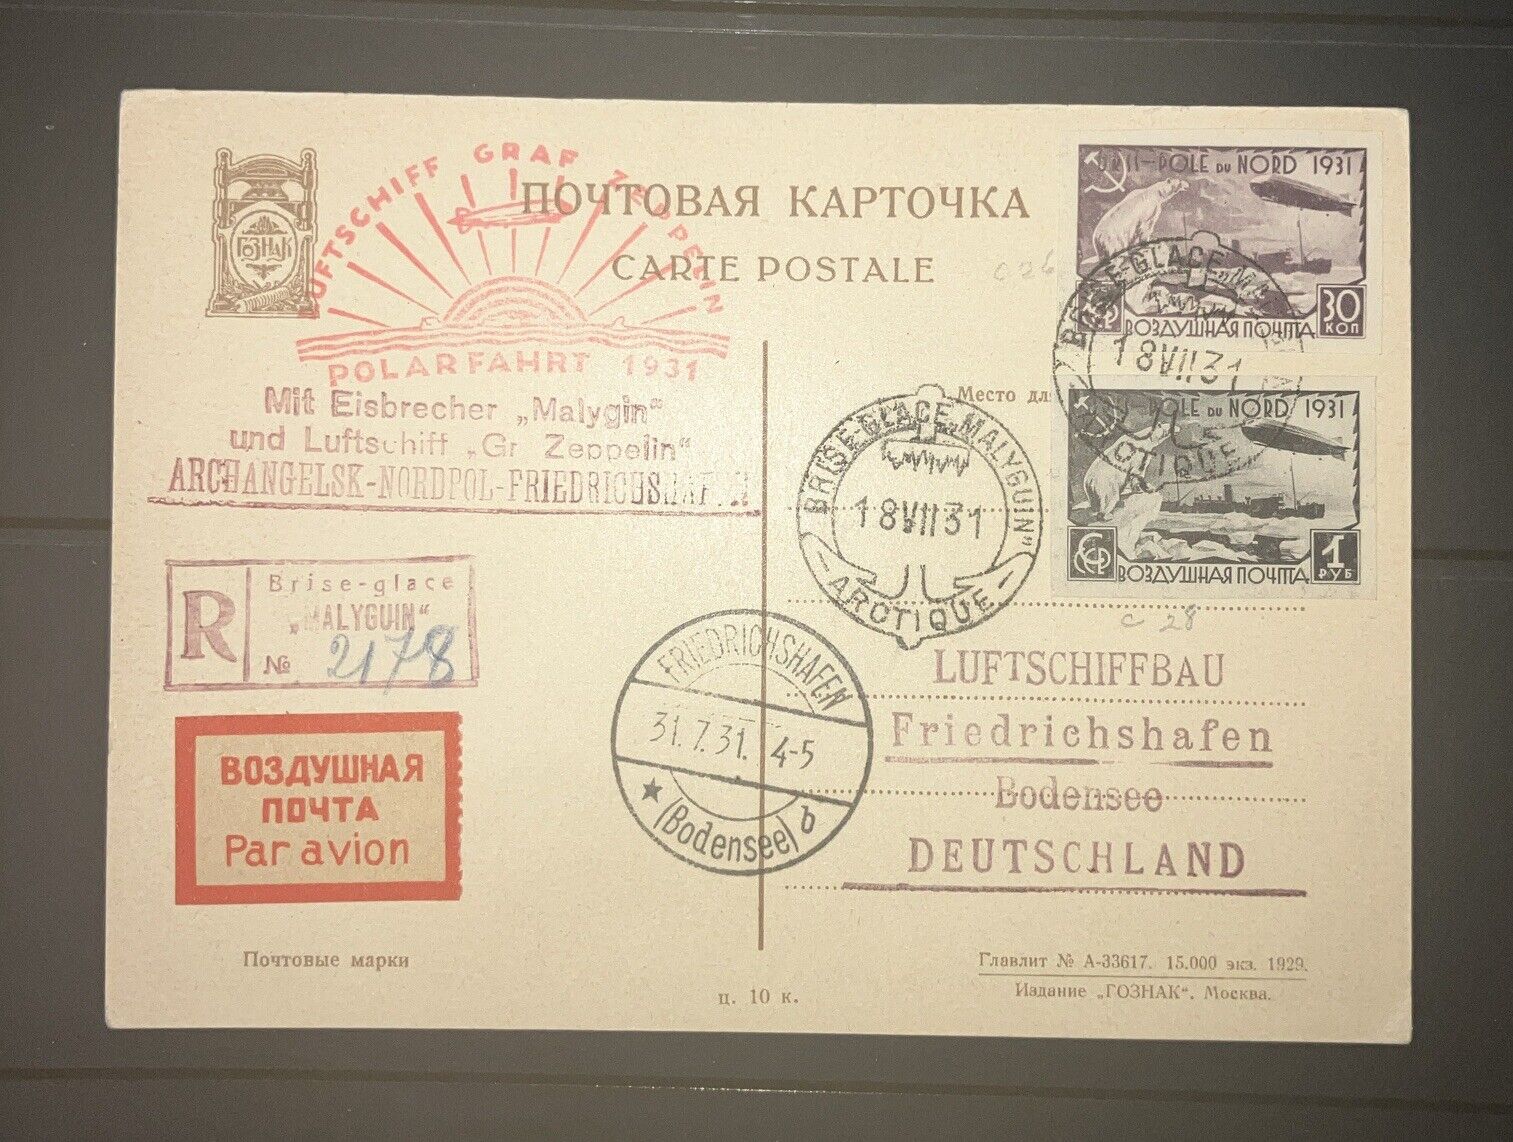 1931 Graf Zeppelin Arctic Flight Postcard - Rare Historic